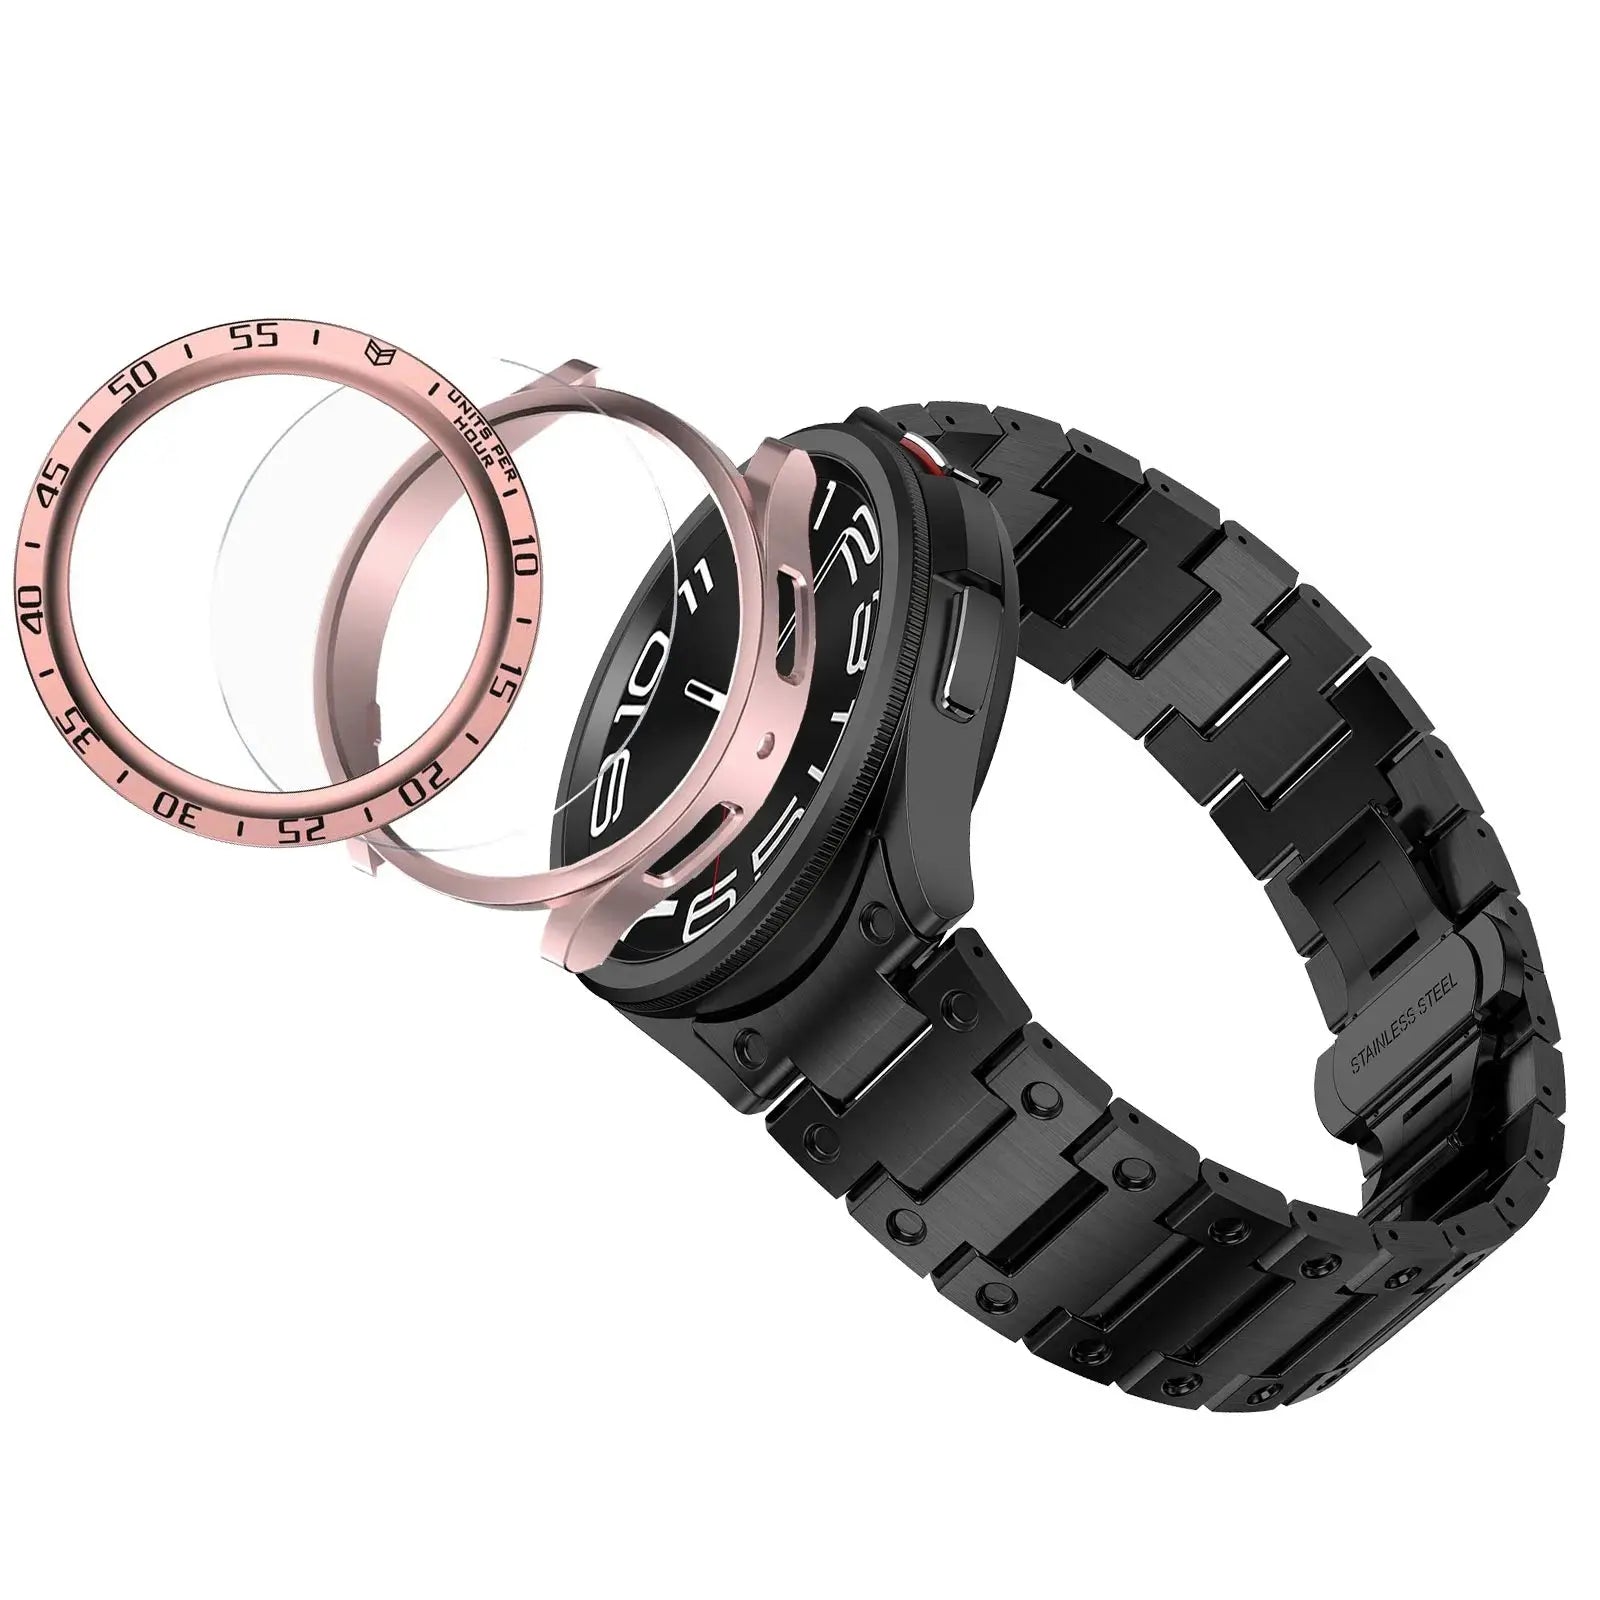 Titanium Elegance Band & Armor Case for Samsung Galaxy Watch